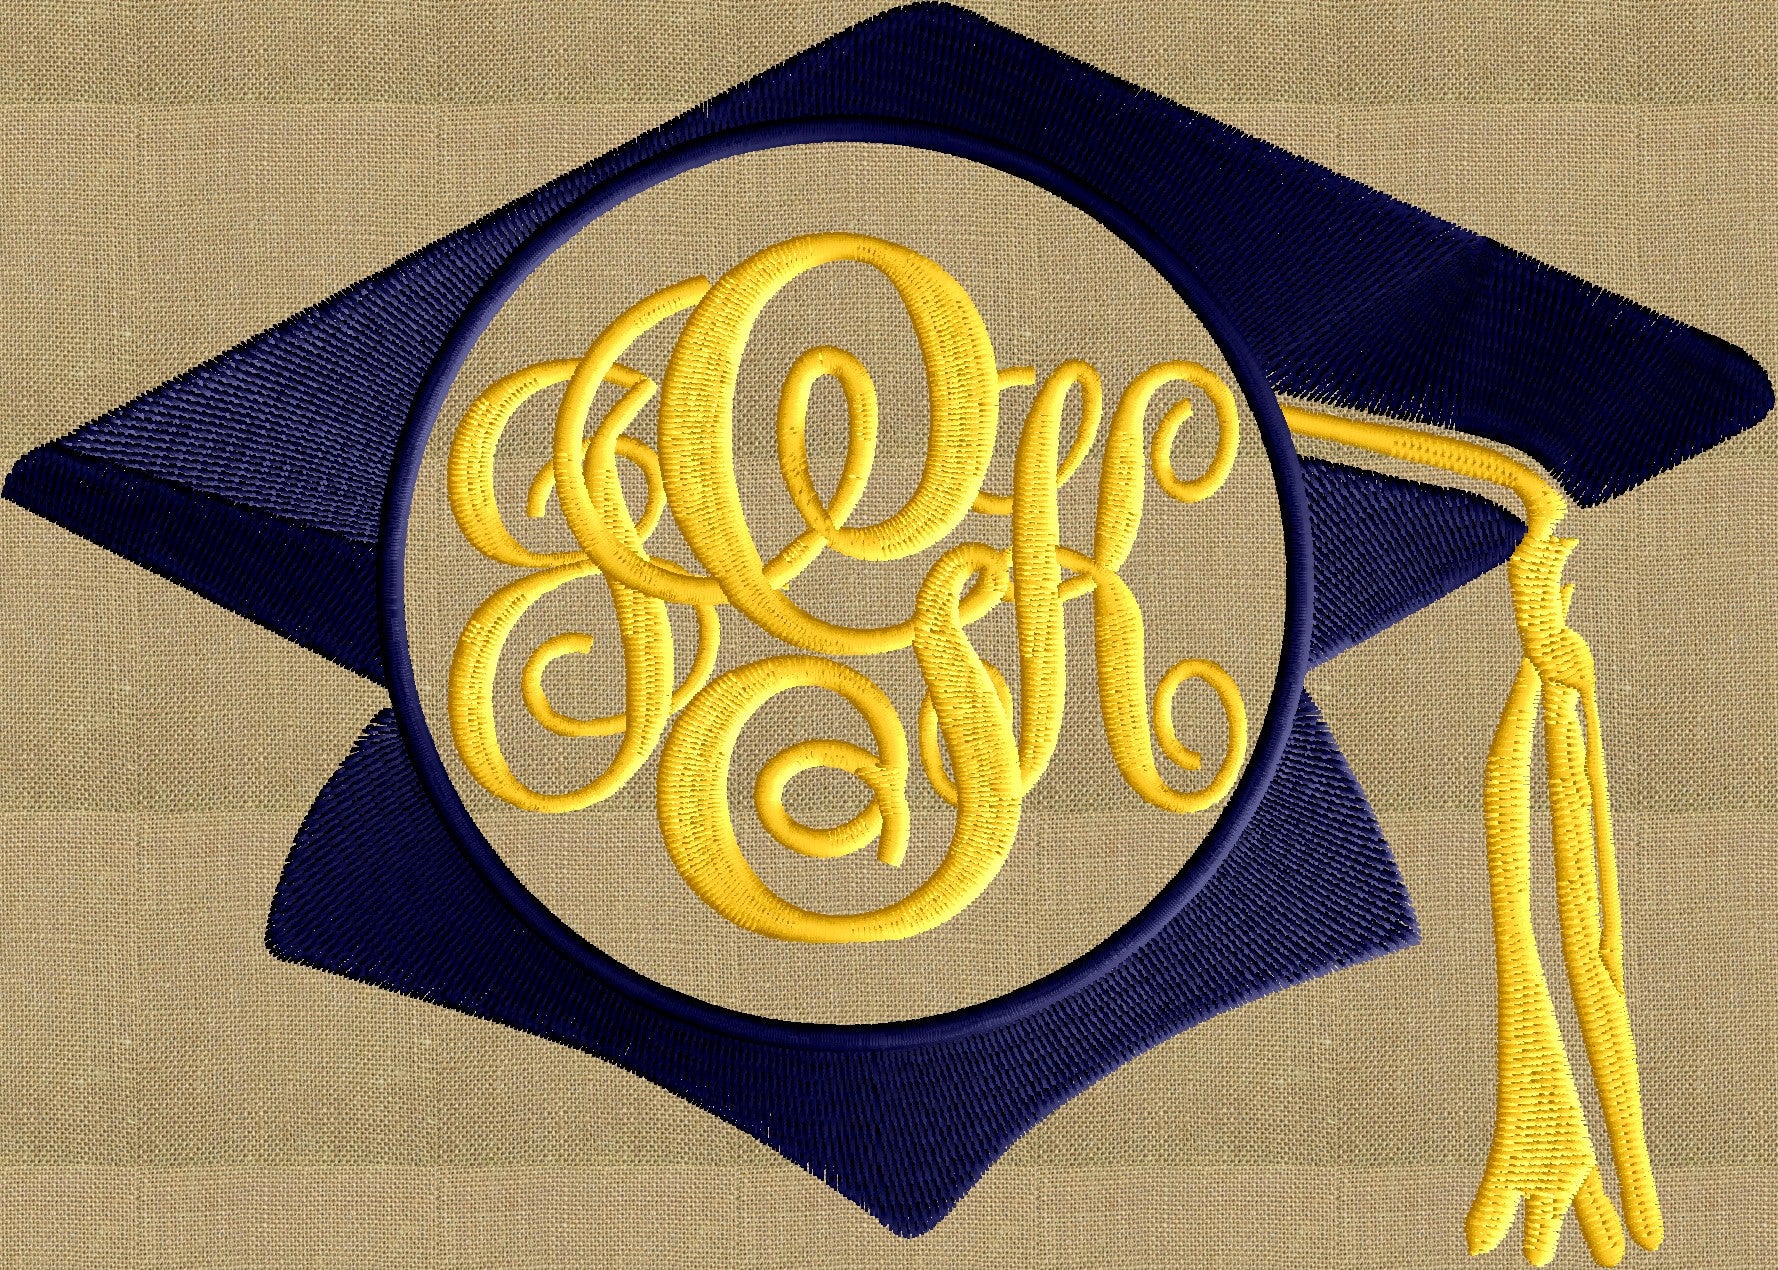 Graduation Cap Hat 2016 Frame Monogram Design -Font not included - EMBROIDERY DESIGN FILE - Instant download - Hus Dst Exp Jef Pes formats